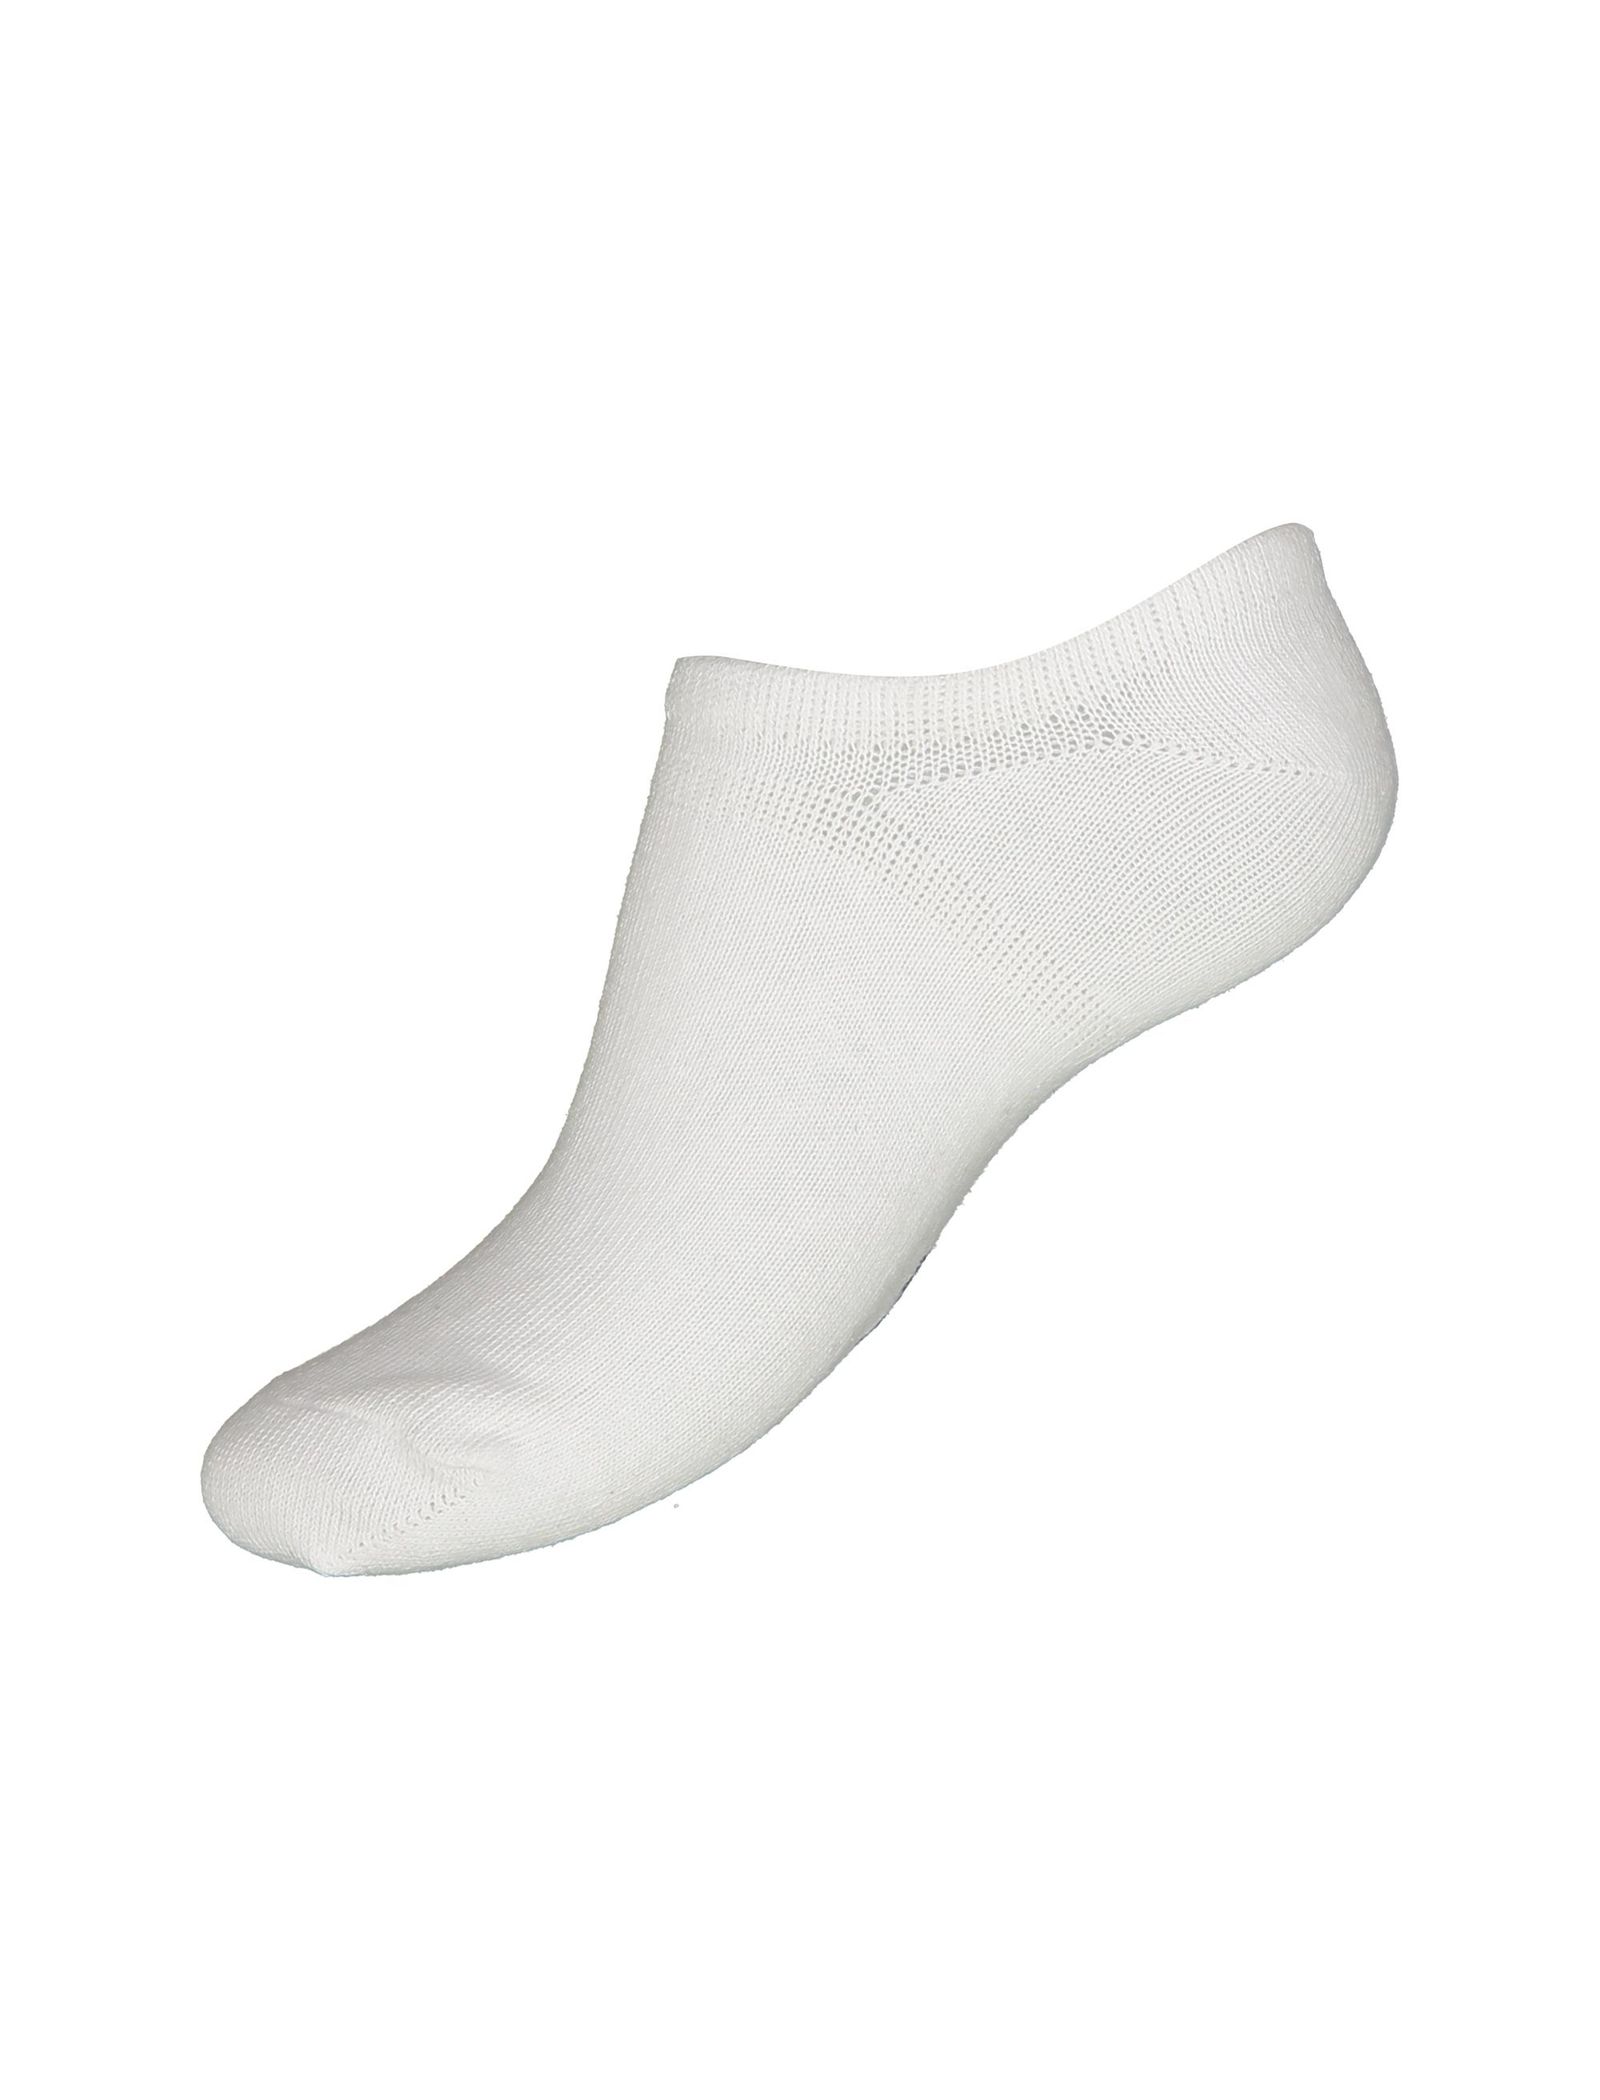 جوراب نخی بدون ساق بچگانه بسته 3 عددی - بلوکیدز - سفيد/طوسي/سرمه اي - 4